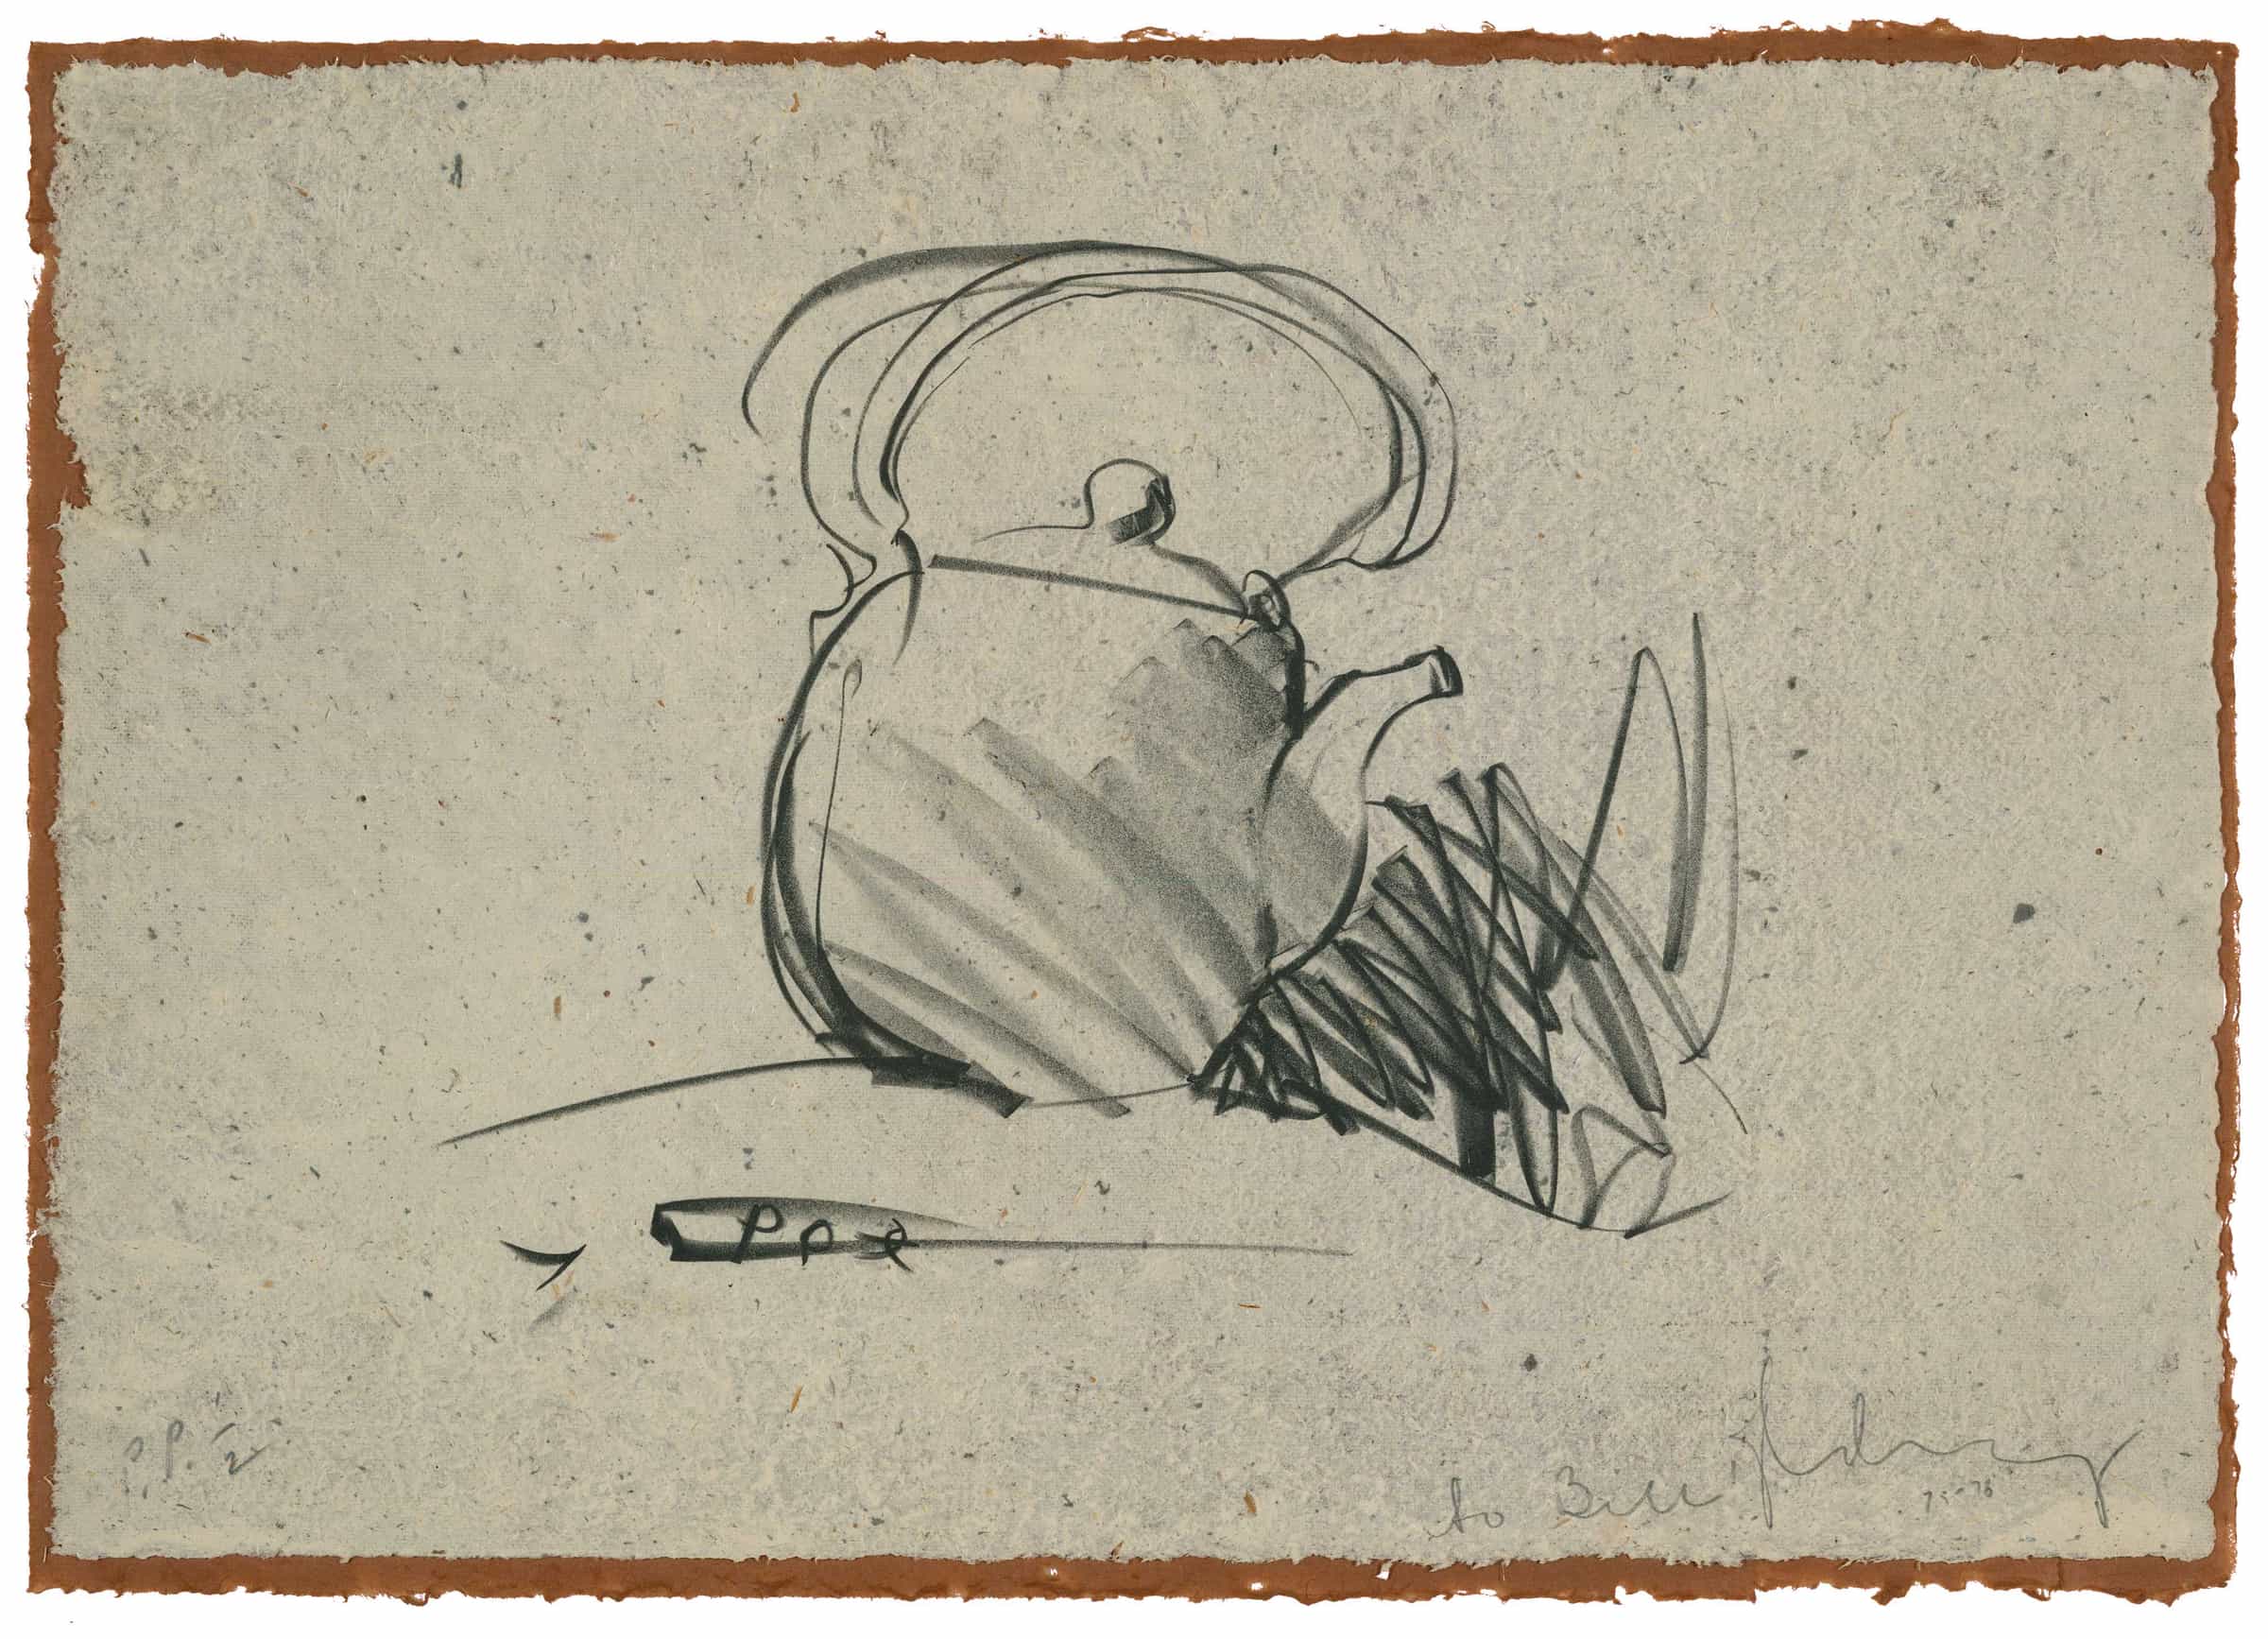 Claes Oldenburg, Tea Pot, 1975